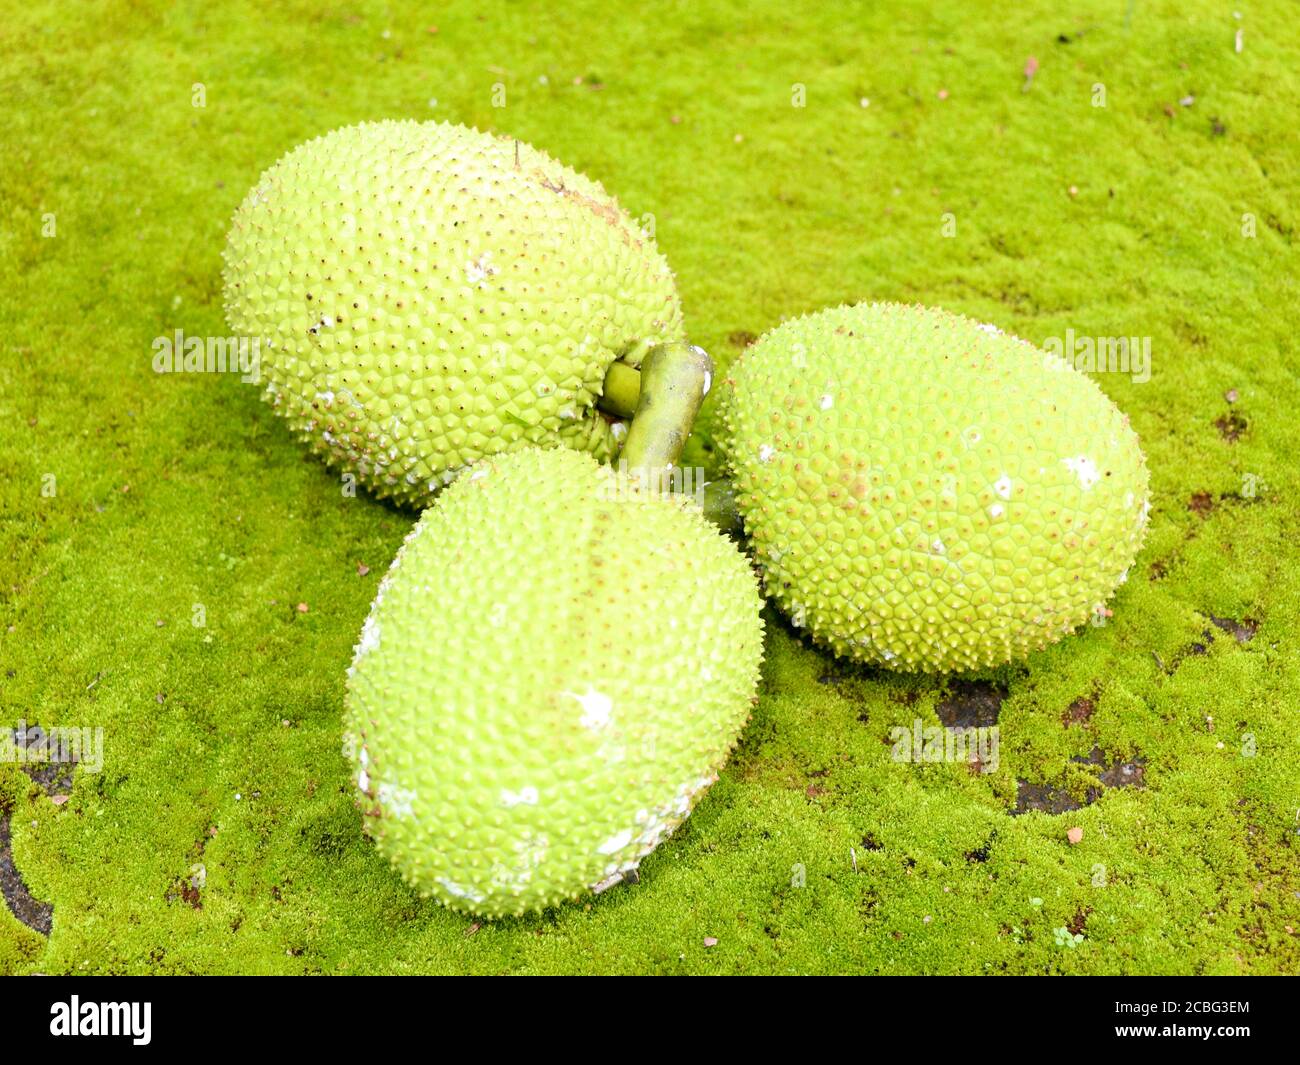 Rohe Brotfrucht (Artocarpus altilis) im grünen Mooshintergrund gehalten. Es gehört zur Familie der Maulbeere und Jackfrucht, selektiver Fokus Stockfoto